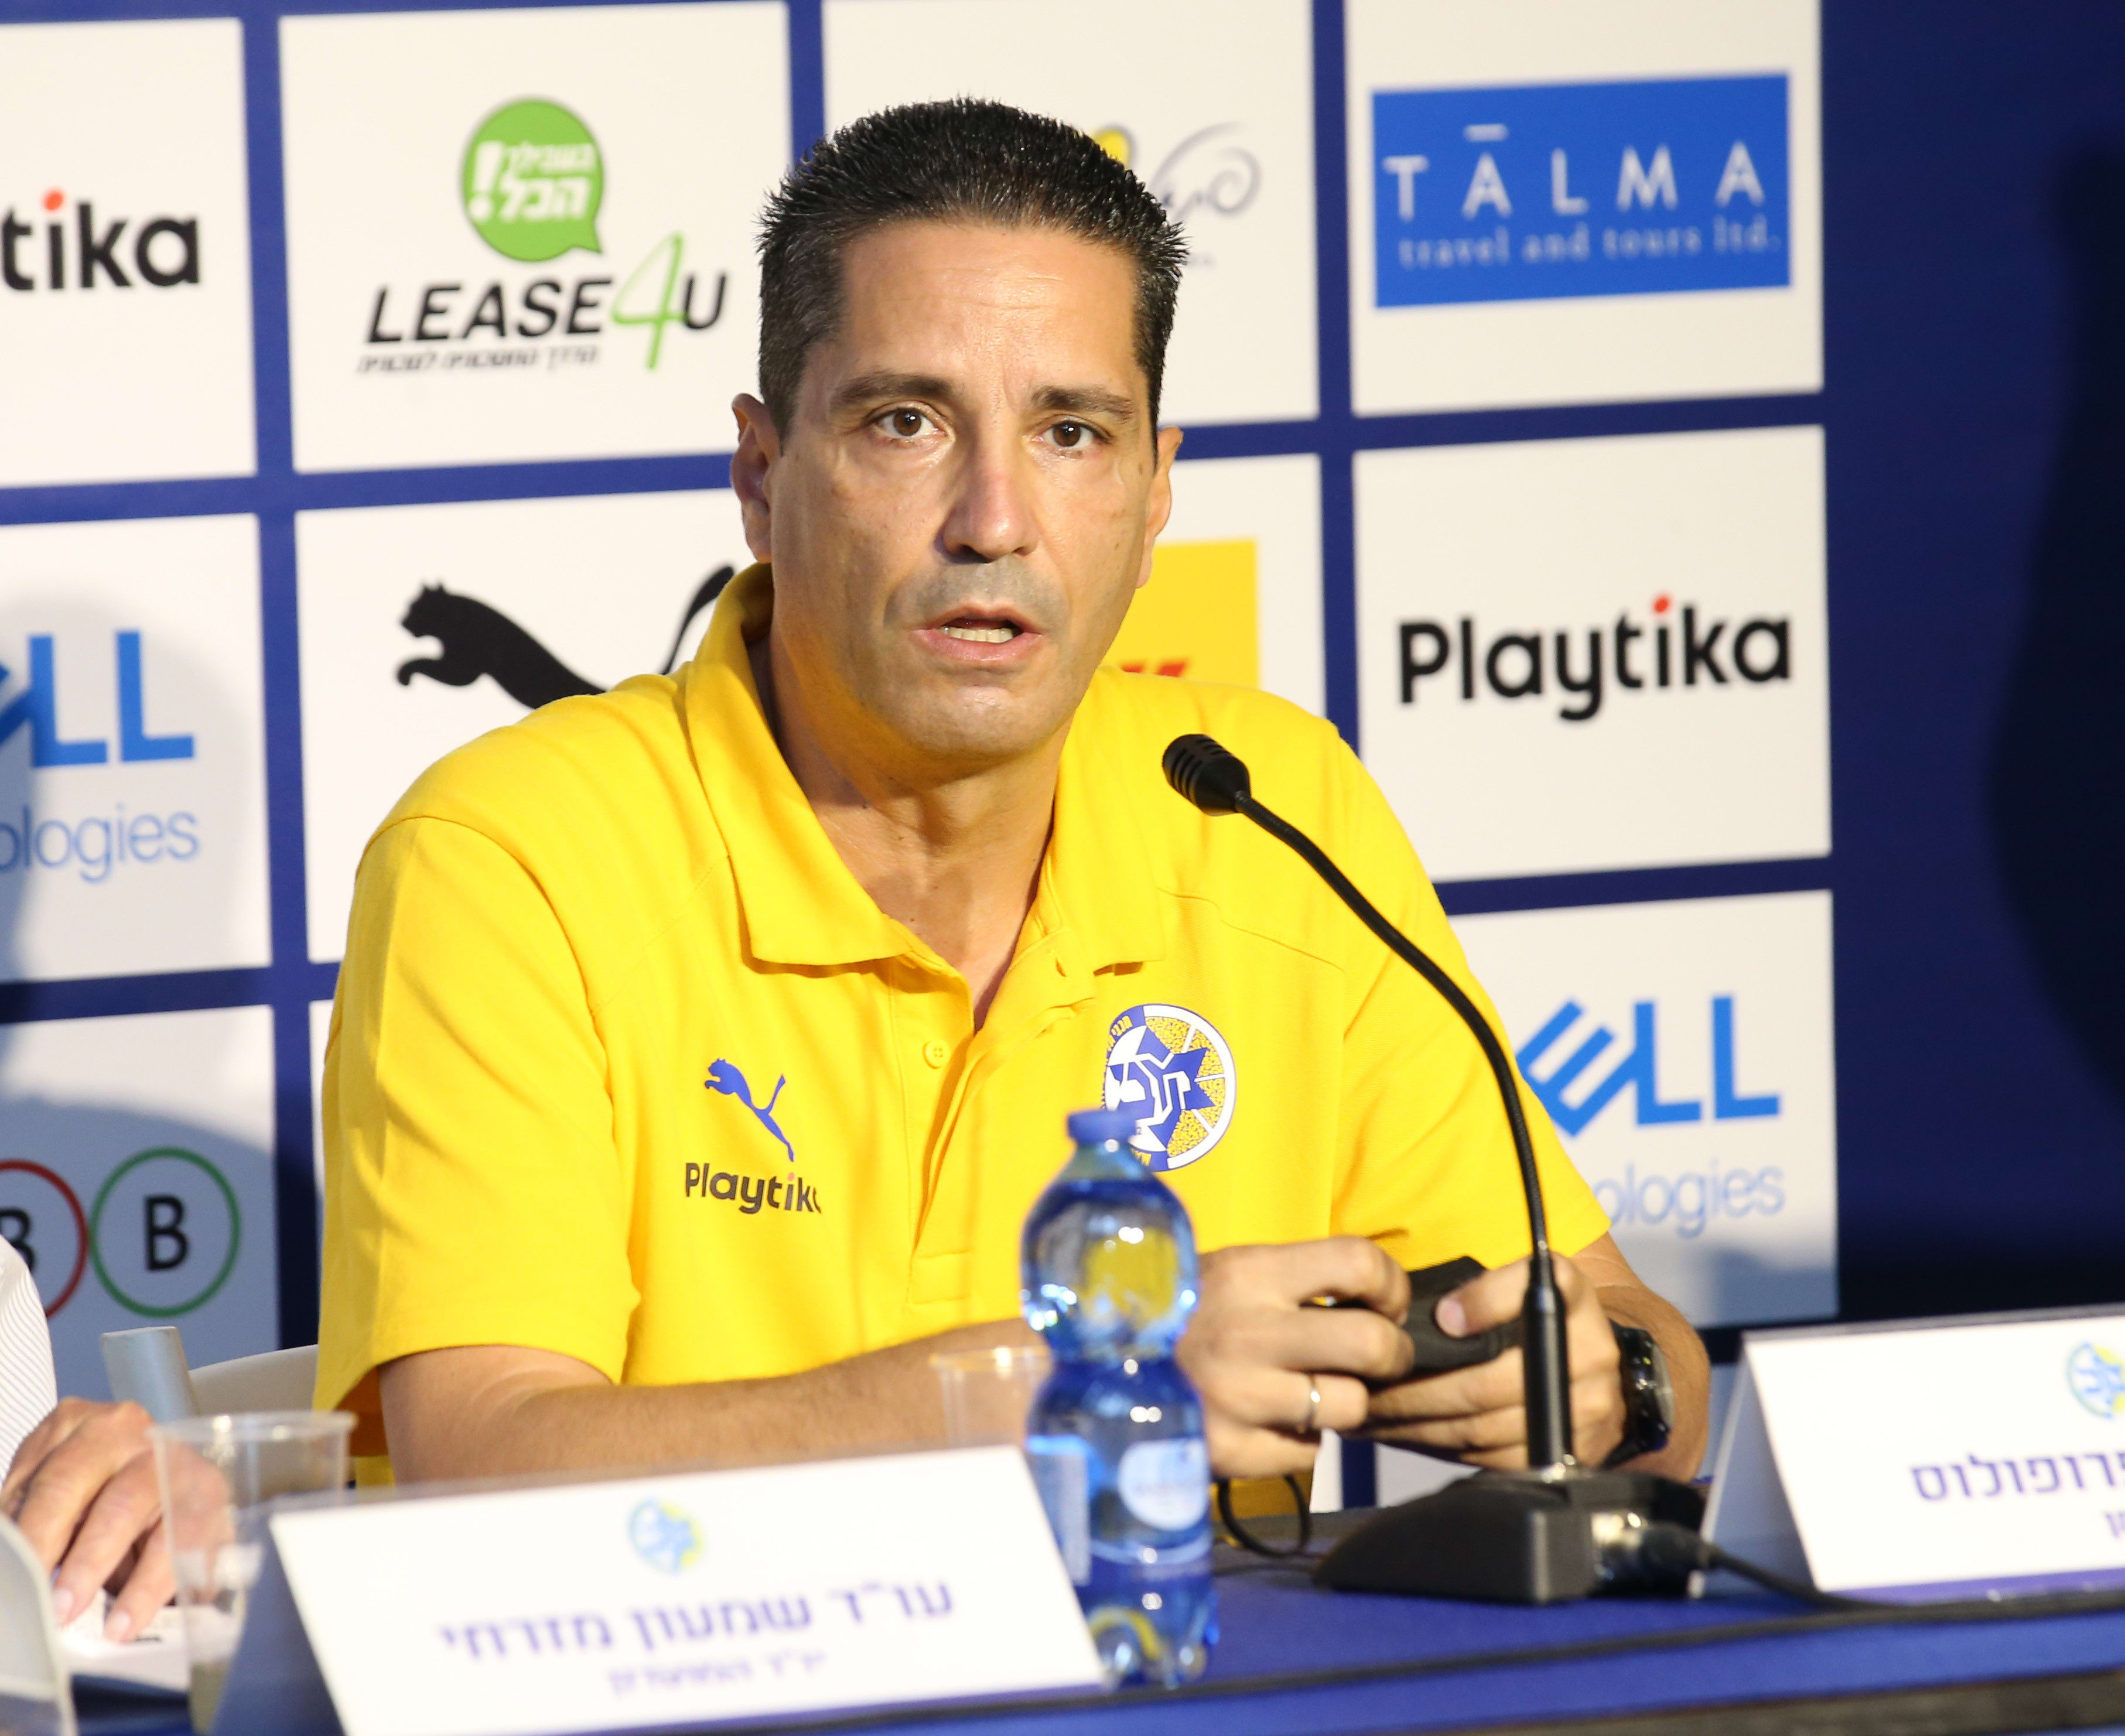 יאניס ספרופולוס מאמן מכבי תל אביב